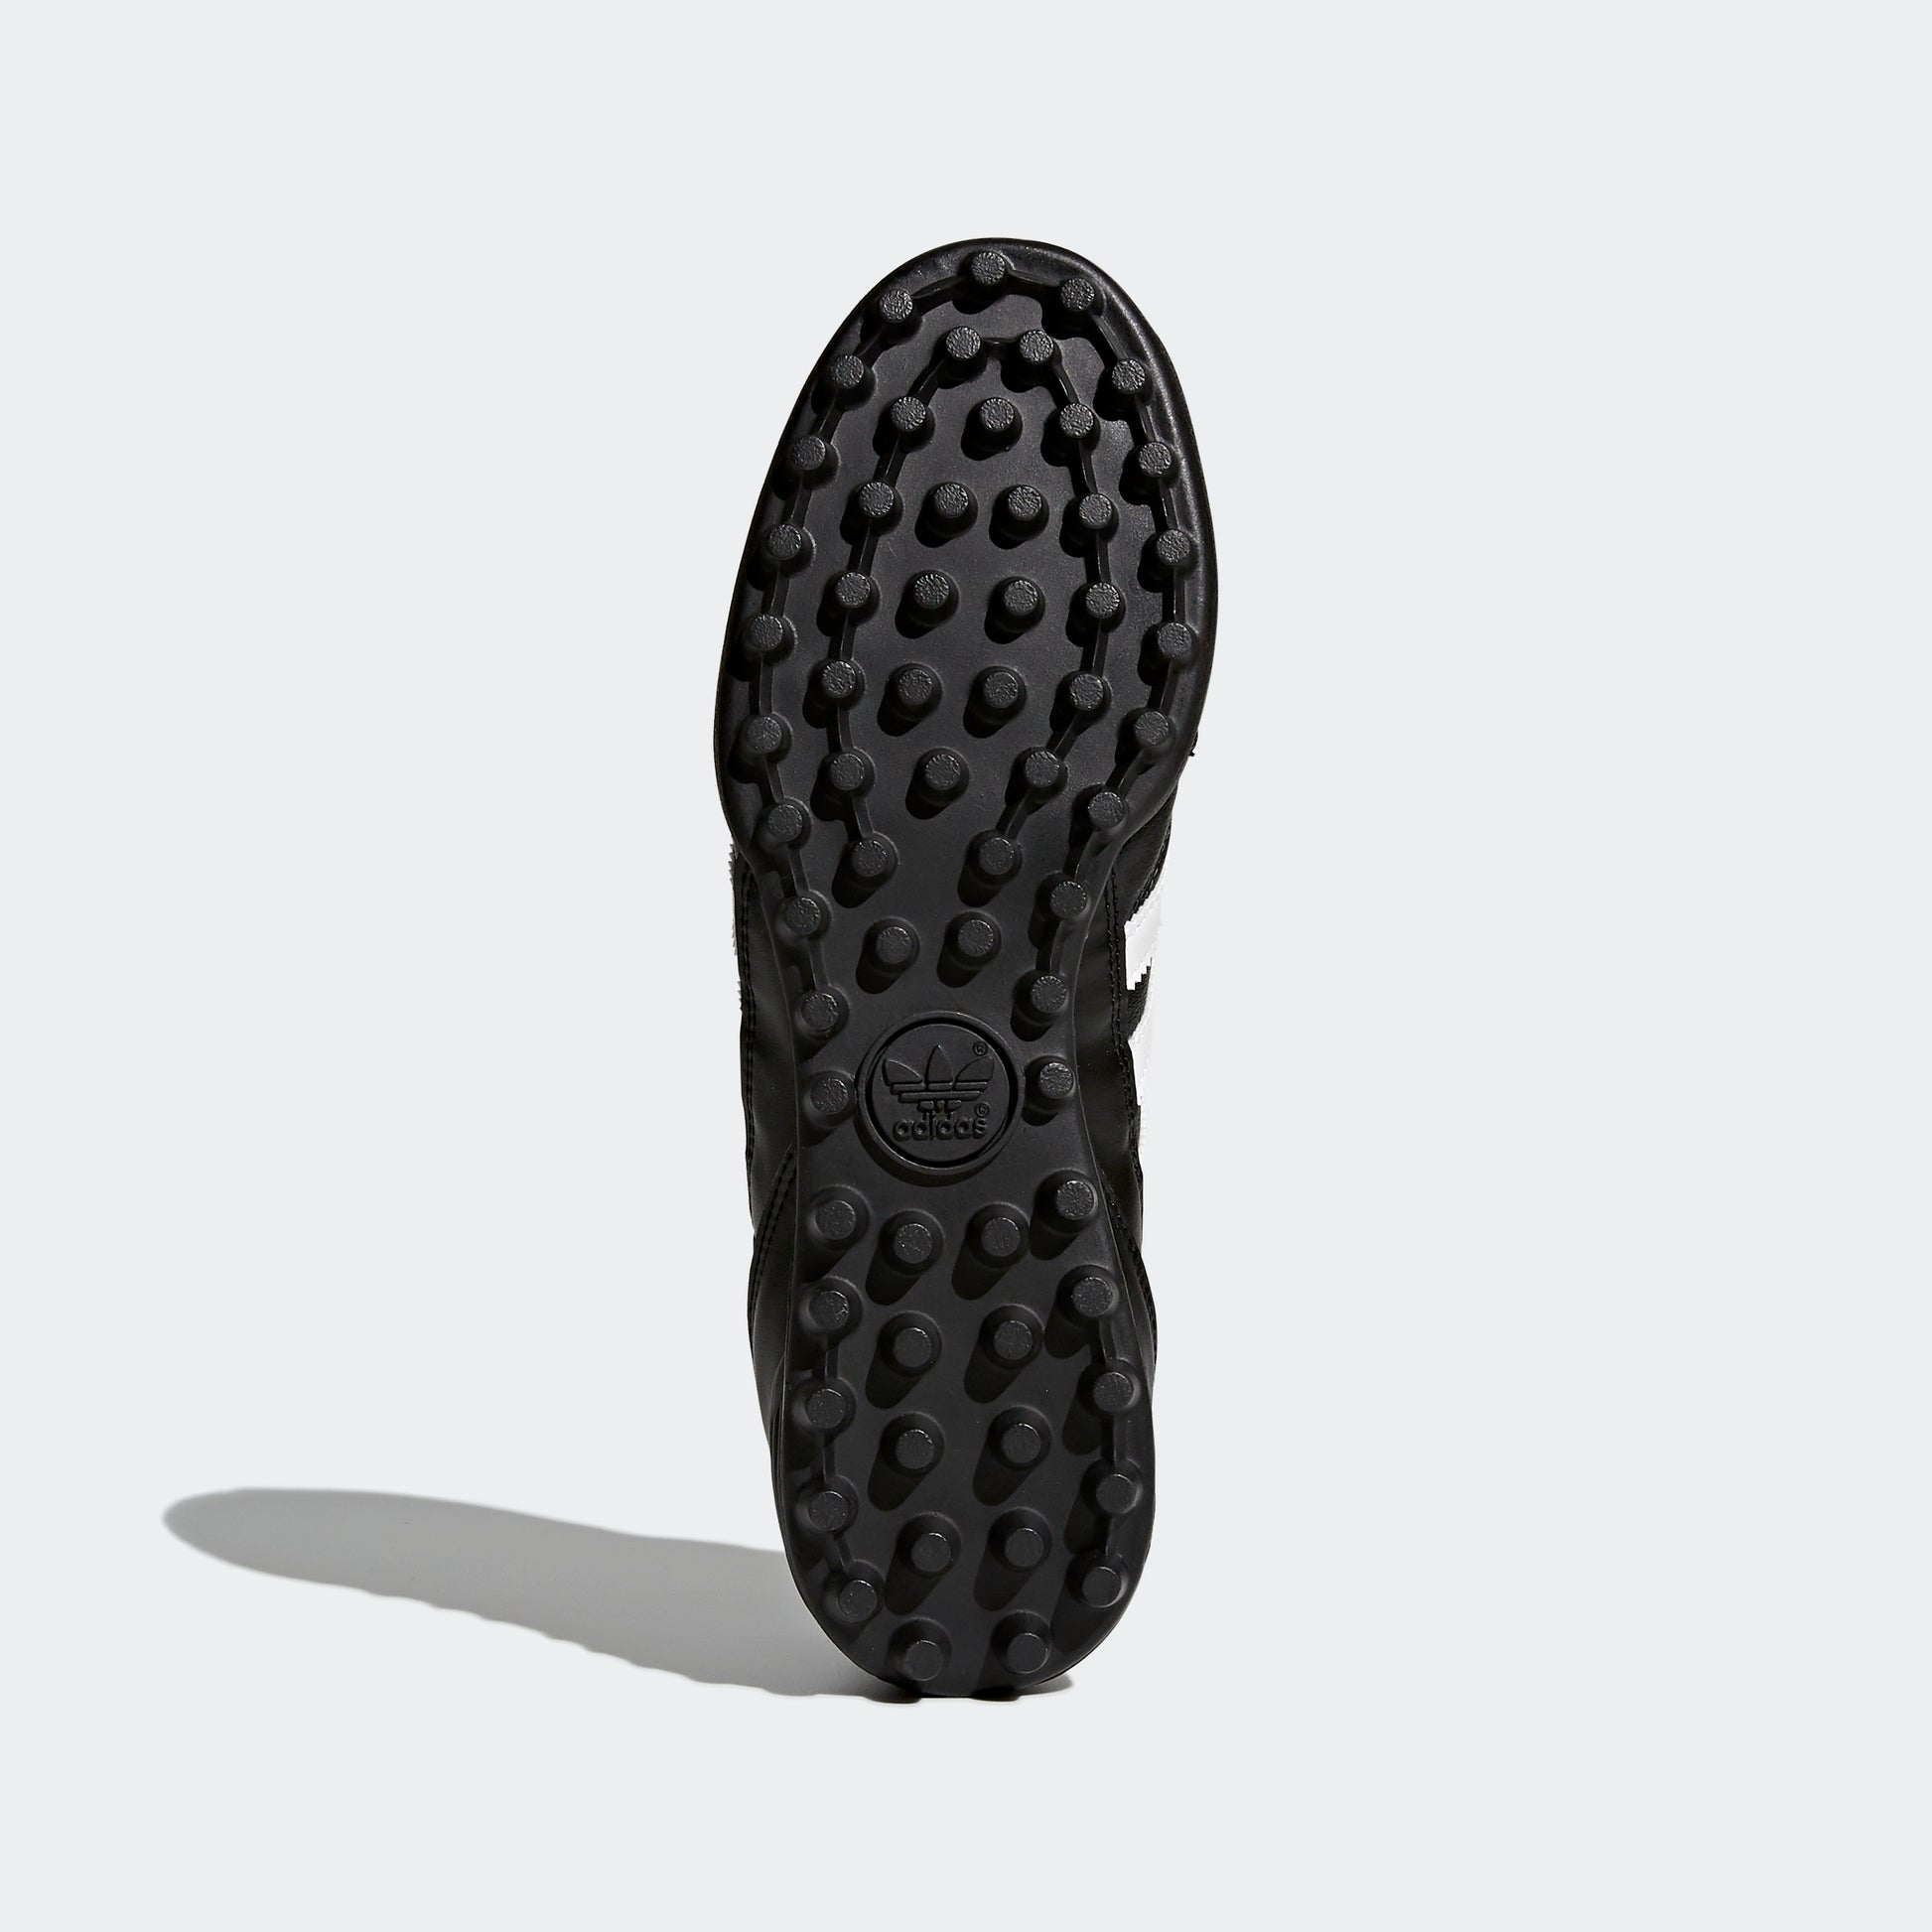 נעלי קטרגל לגברים KAISER 5 GOAL בצבע שחור לבן